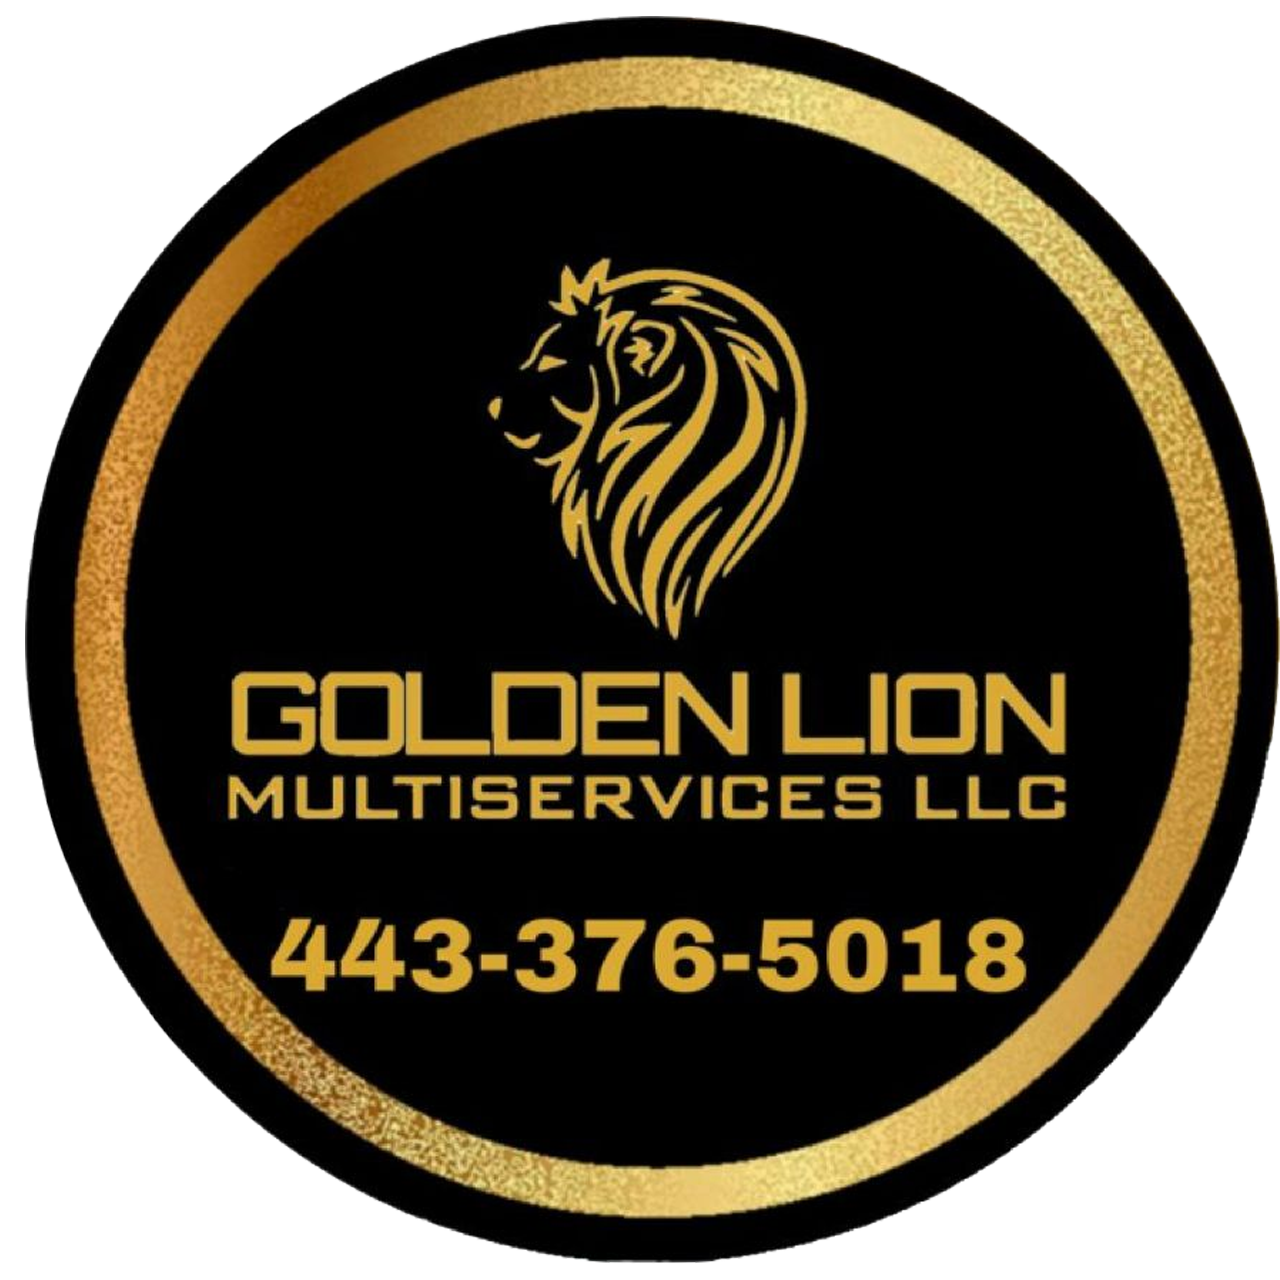 Golden Lion Multiservices